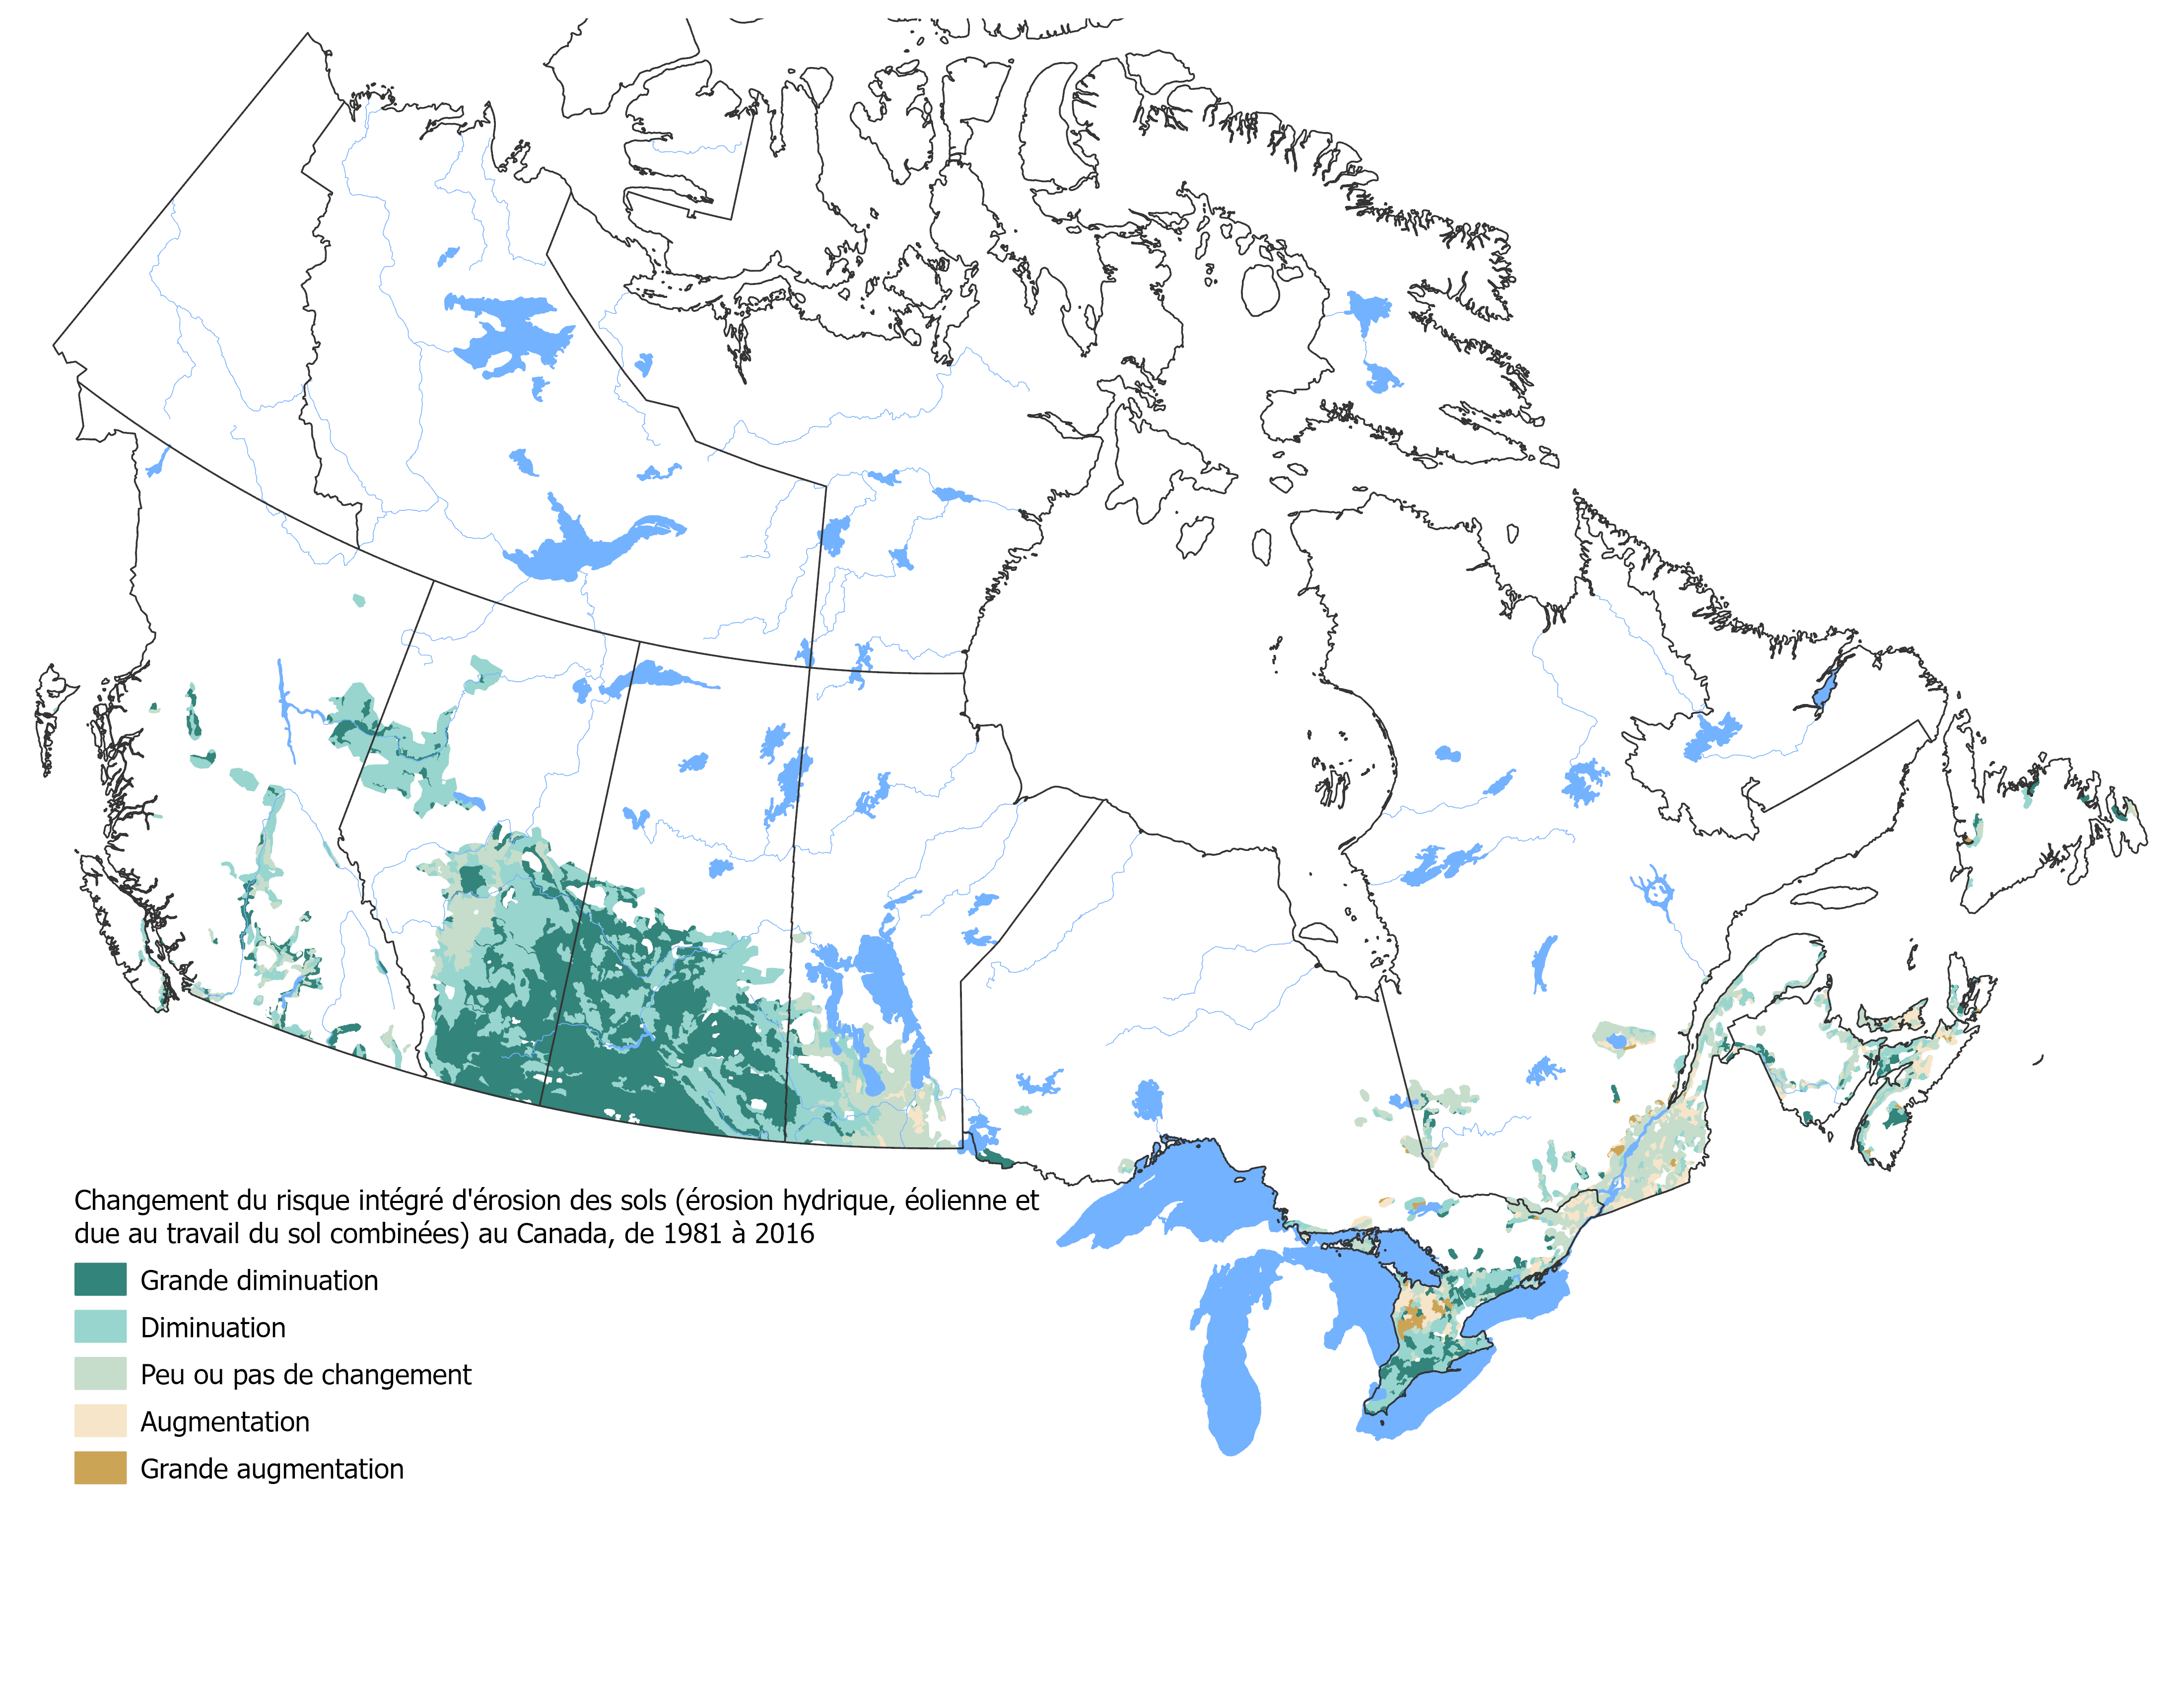 La figure 2 illustre l'évolution du risque intégré d'érosion du sol au Canada entre 1981 et 2016, avec un code de couleurs basé sur l'évolution du risque. Le risque d'érosion du sol des terres en culture au Canada a reculé de façon constante entre 1981 et 2011, mais a légèrement augmenté en 2016.